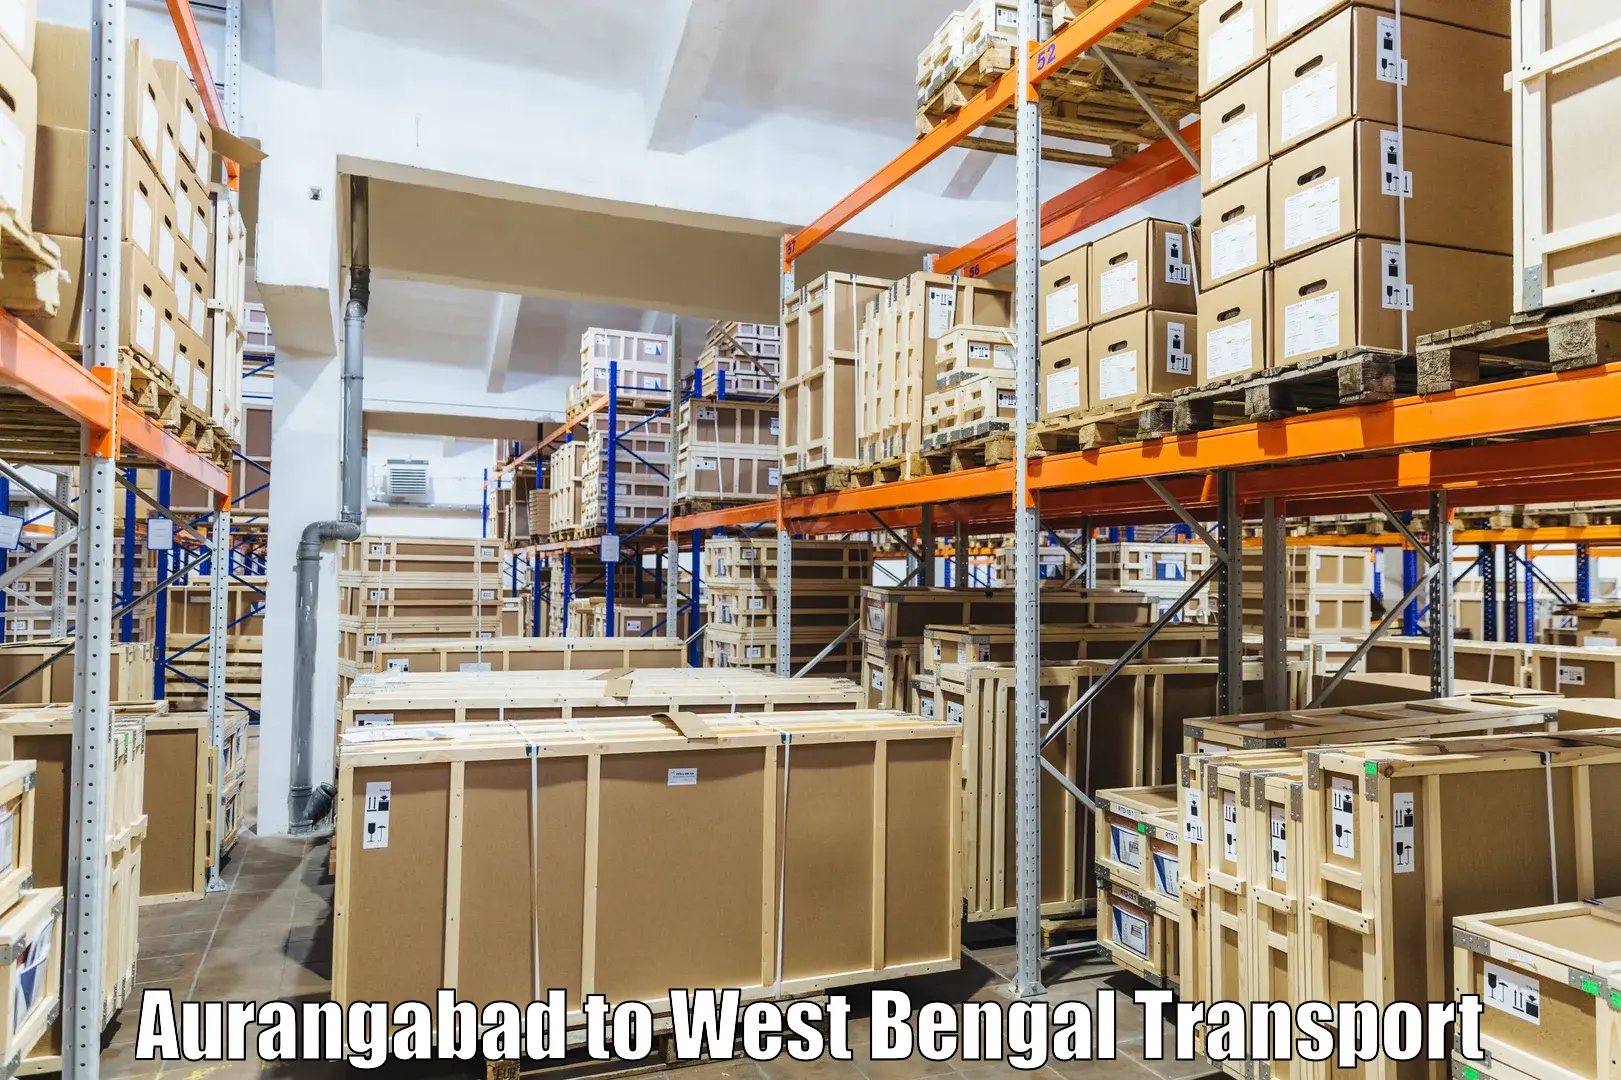 Furniture transport service Aurangabad to Barasat